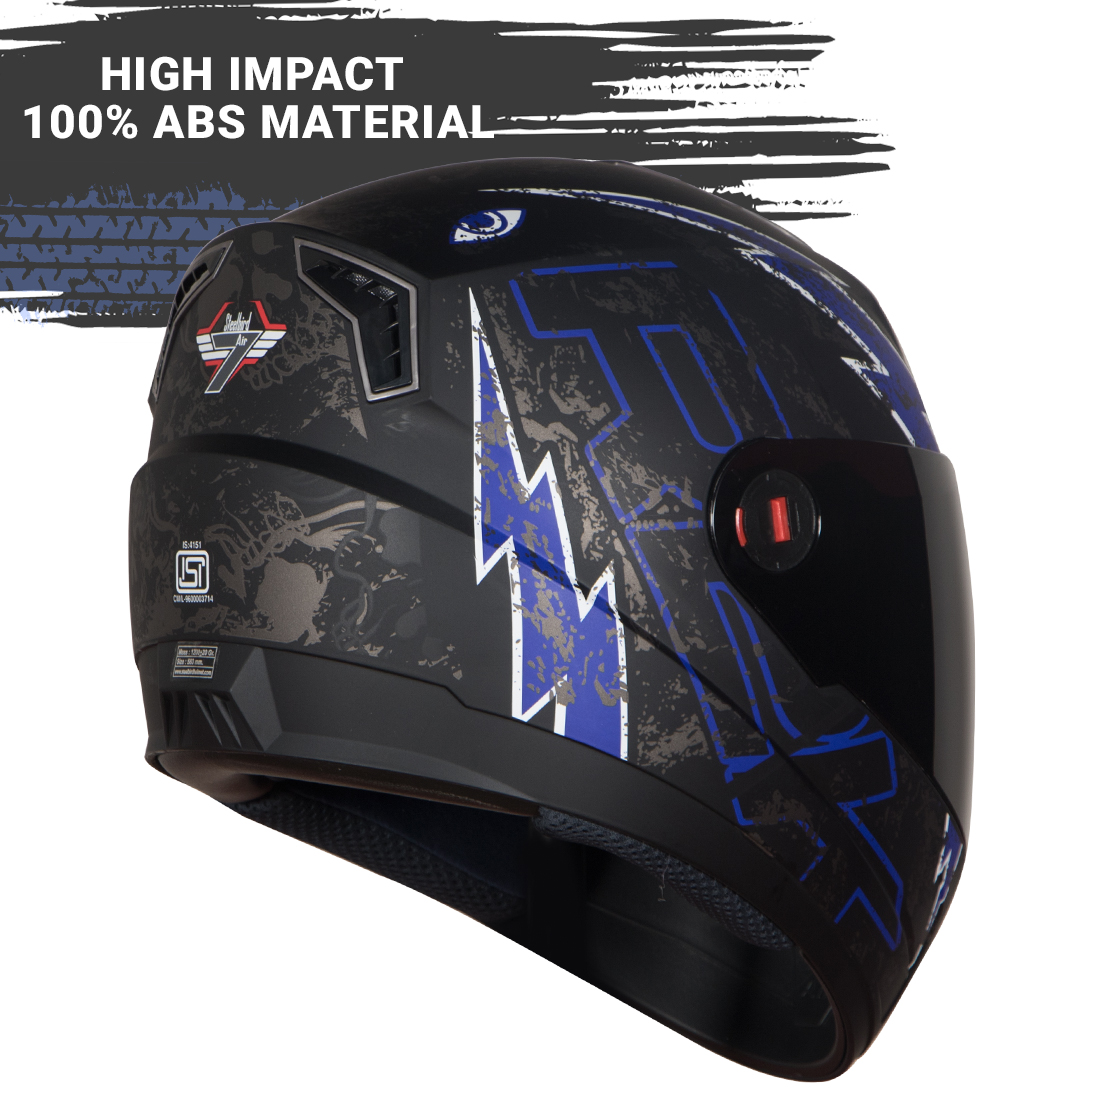 Steelbird SBA-1 R2K Live Full Face Helmet In Matt Finish (Matt Black Blue With Chrome Blue Visor)